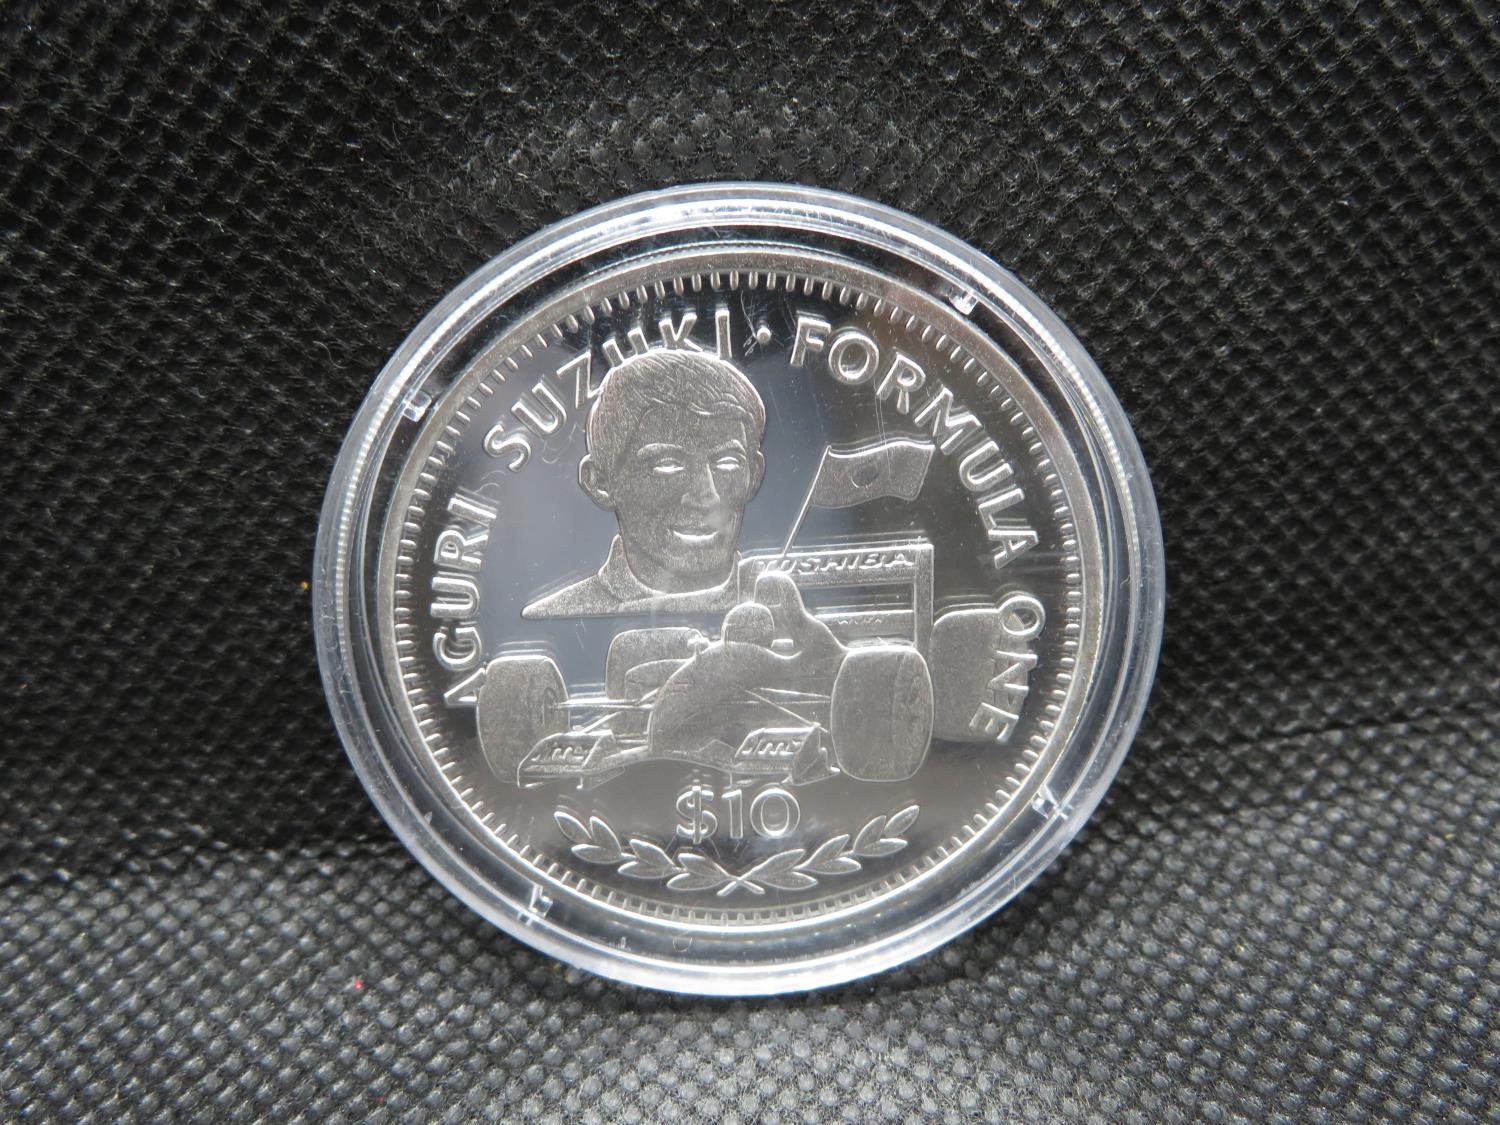 1992 Liberia 10 dollar silver proof Aguri Suzuki 1oz pure silver coin - Image 3 of 3